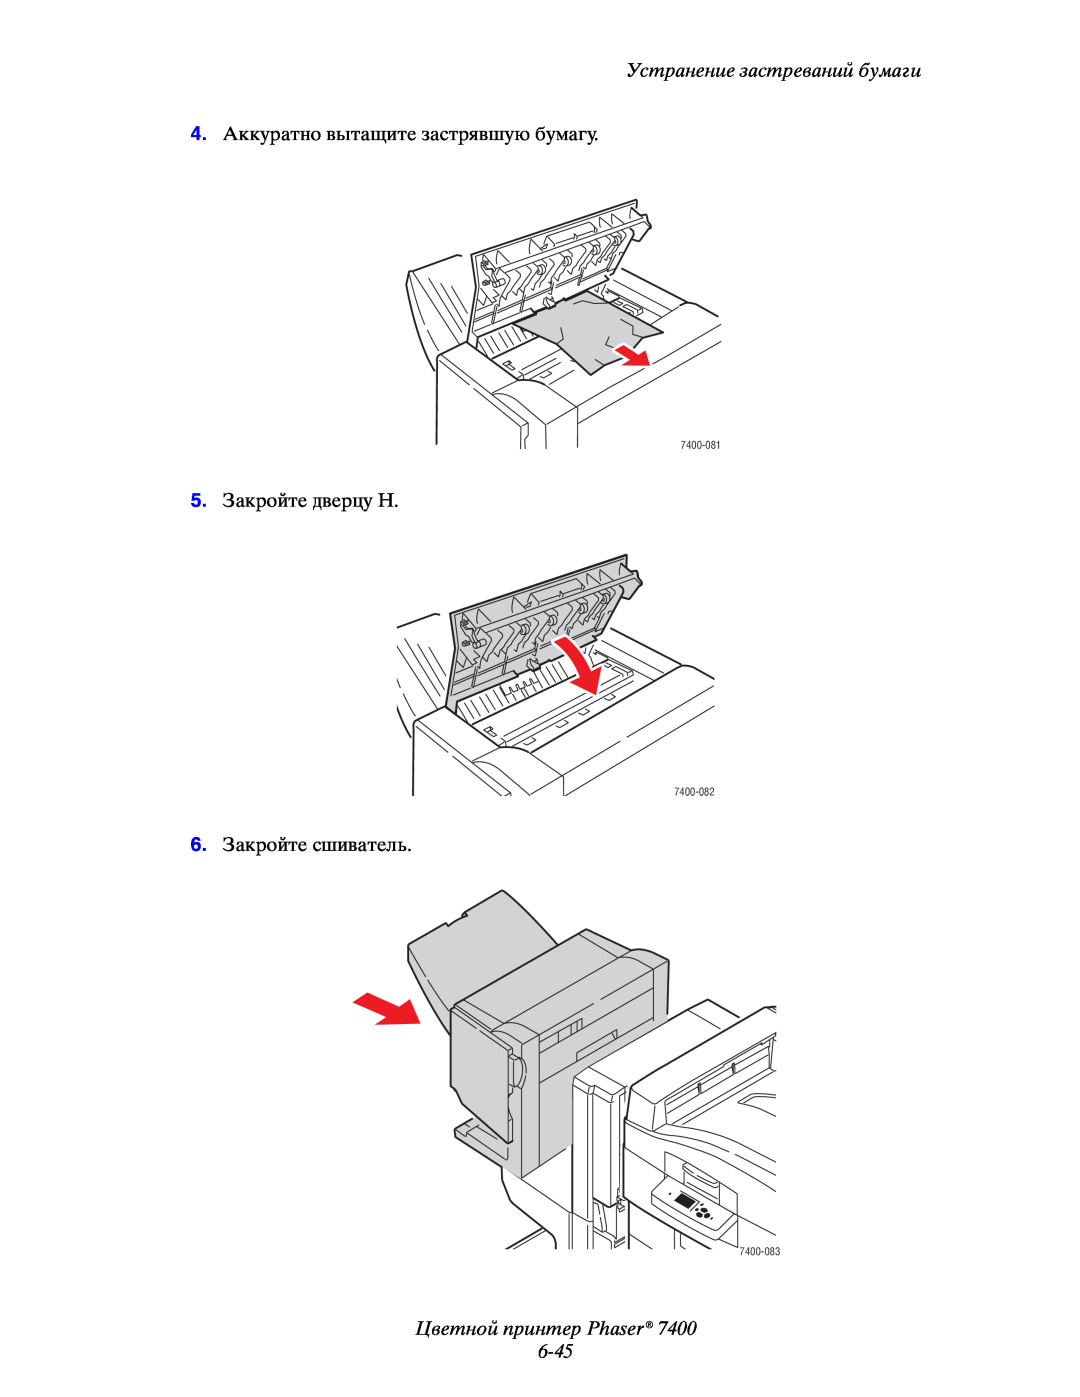 Xerox manual Цветной принтер Phaser 6-45, Устранение застреваний бумаги, 7400-081, 7400-082, 7400-083 